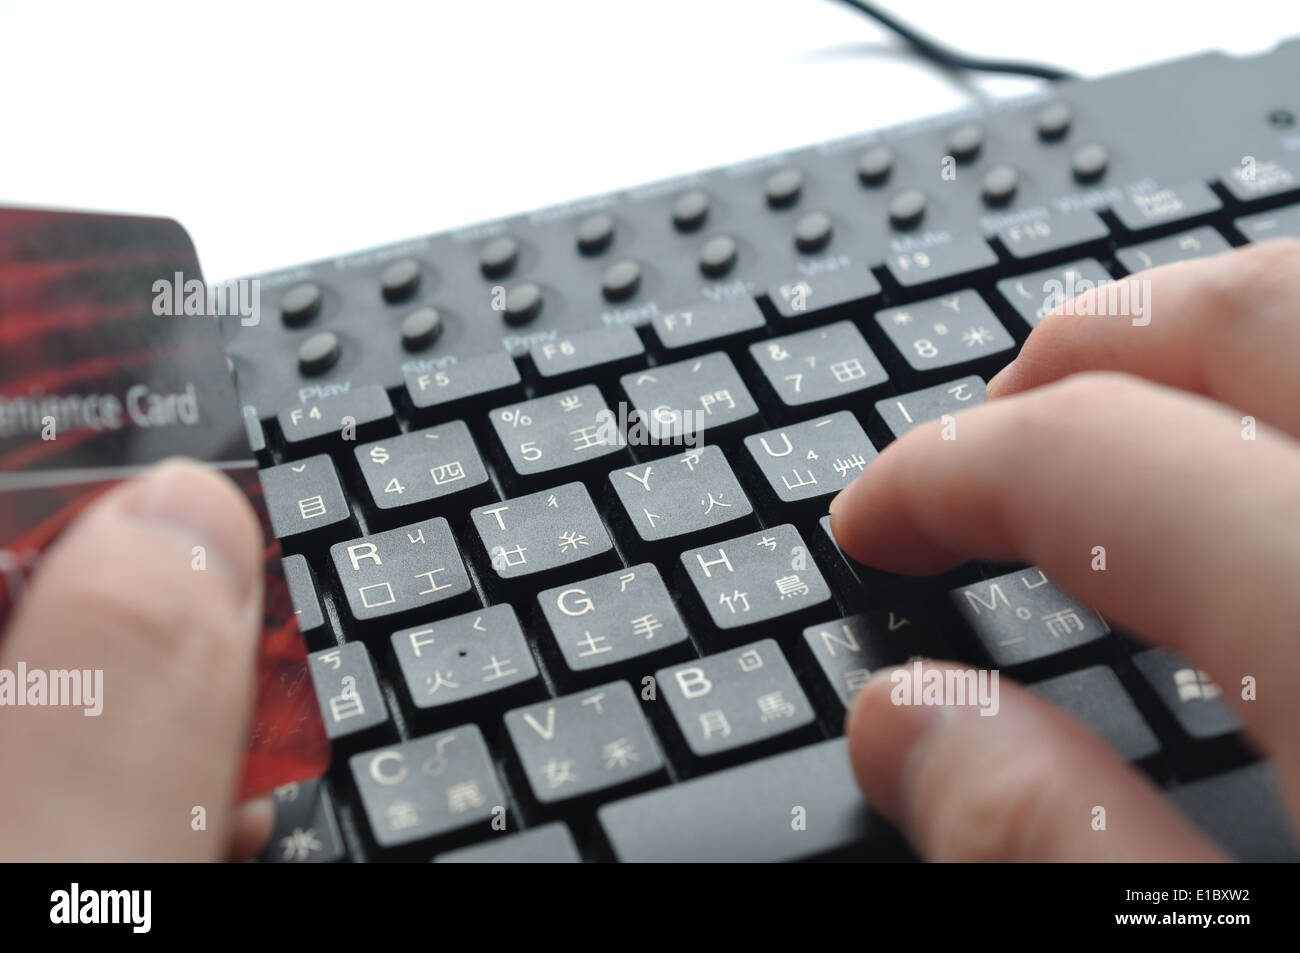 Digitare le informazioni della carta di credito sulla tastiera cinese ; focus sulla mano destra dito medio Foto Stock